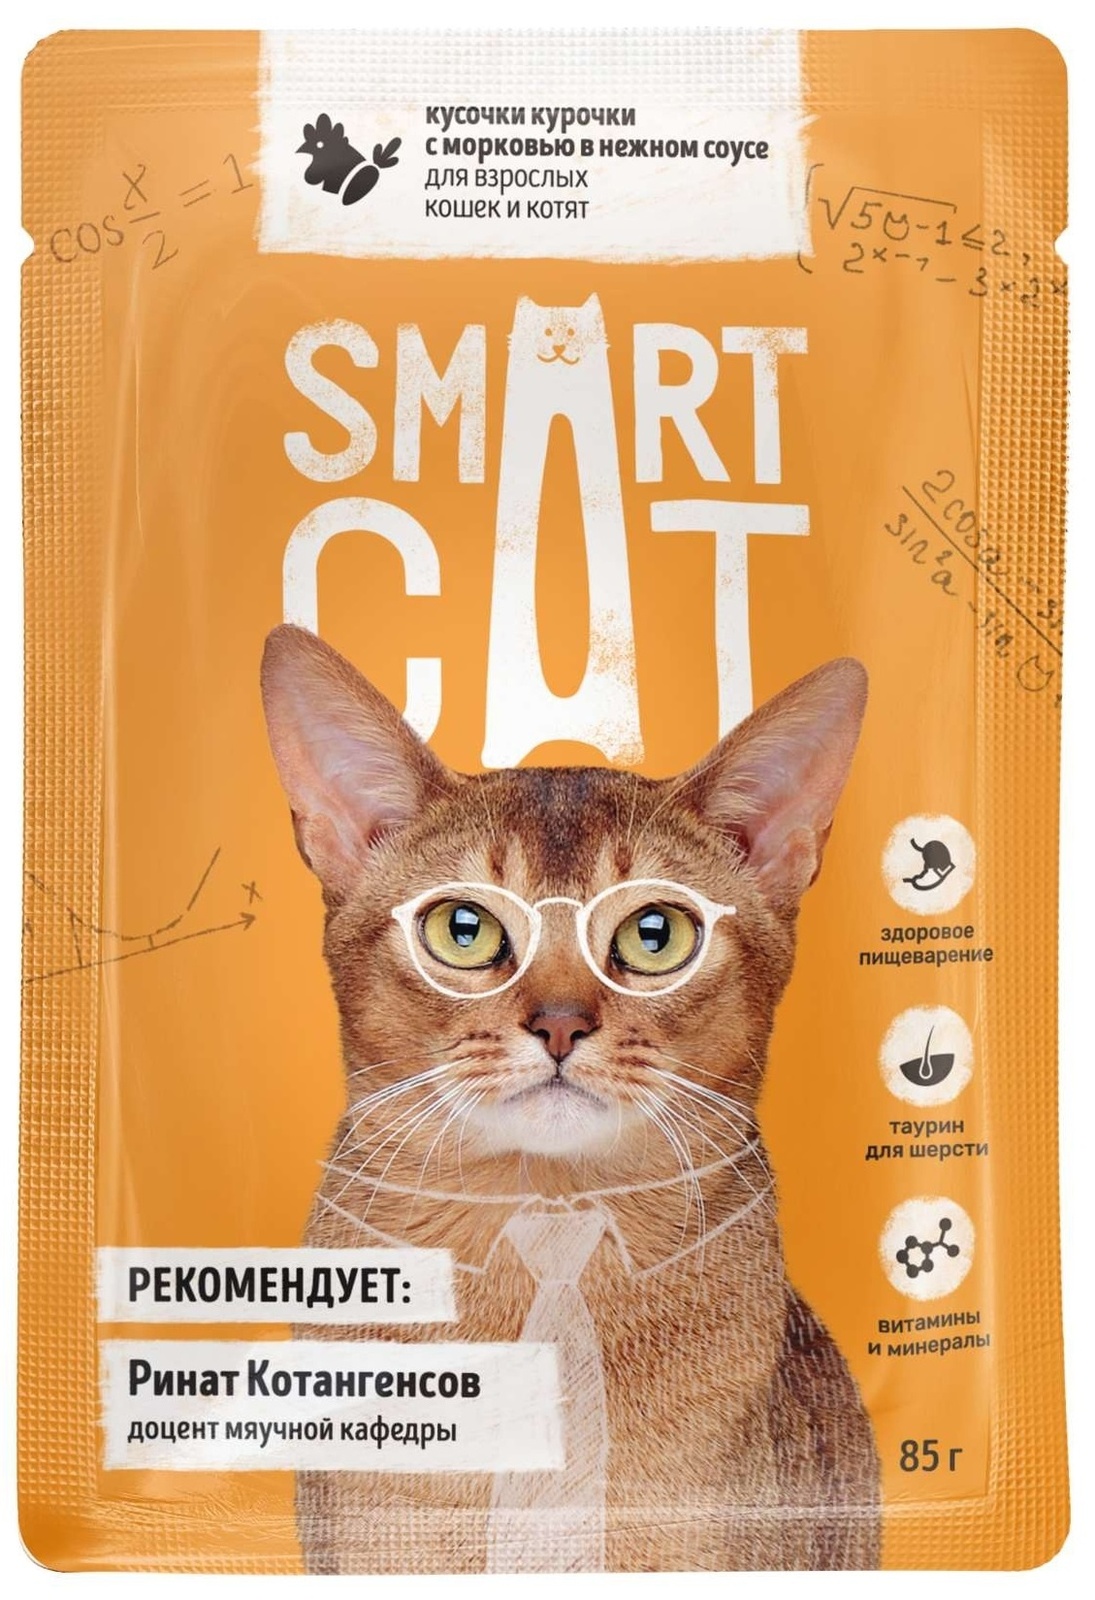 цена Smart Cat Smart Cat паучи для взрослых кошек и котят: кусочки курочки с морковью в нежном соусе (85 г)